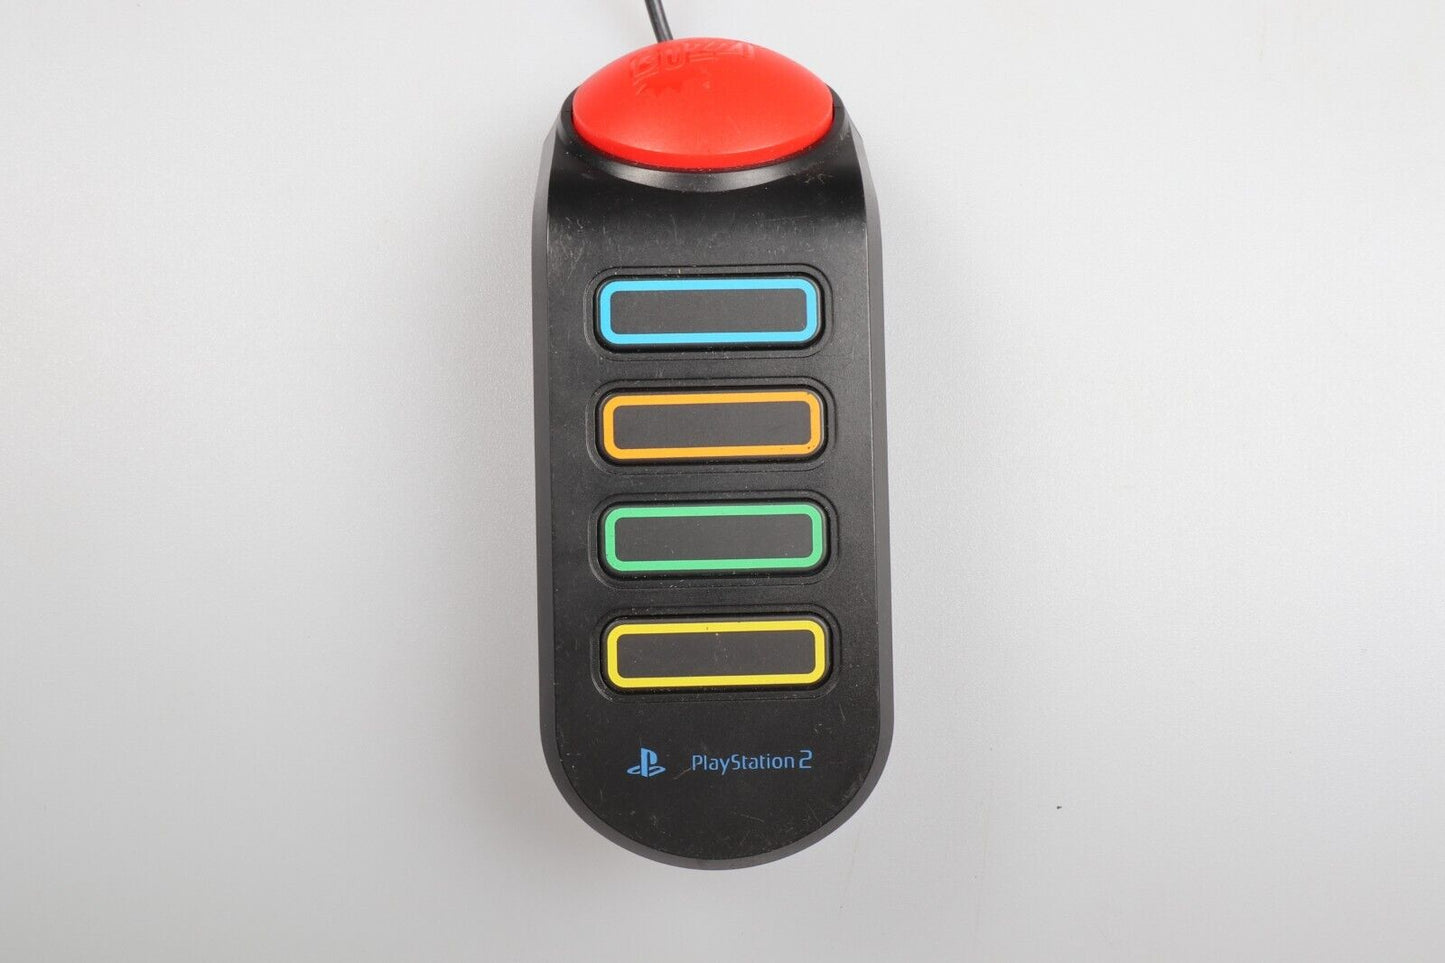 PS2 | Buzz Buzzer Controller for PS2 SCEH-0005